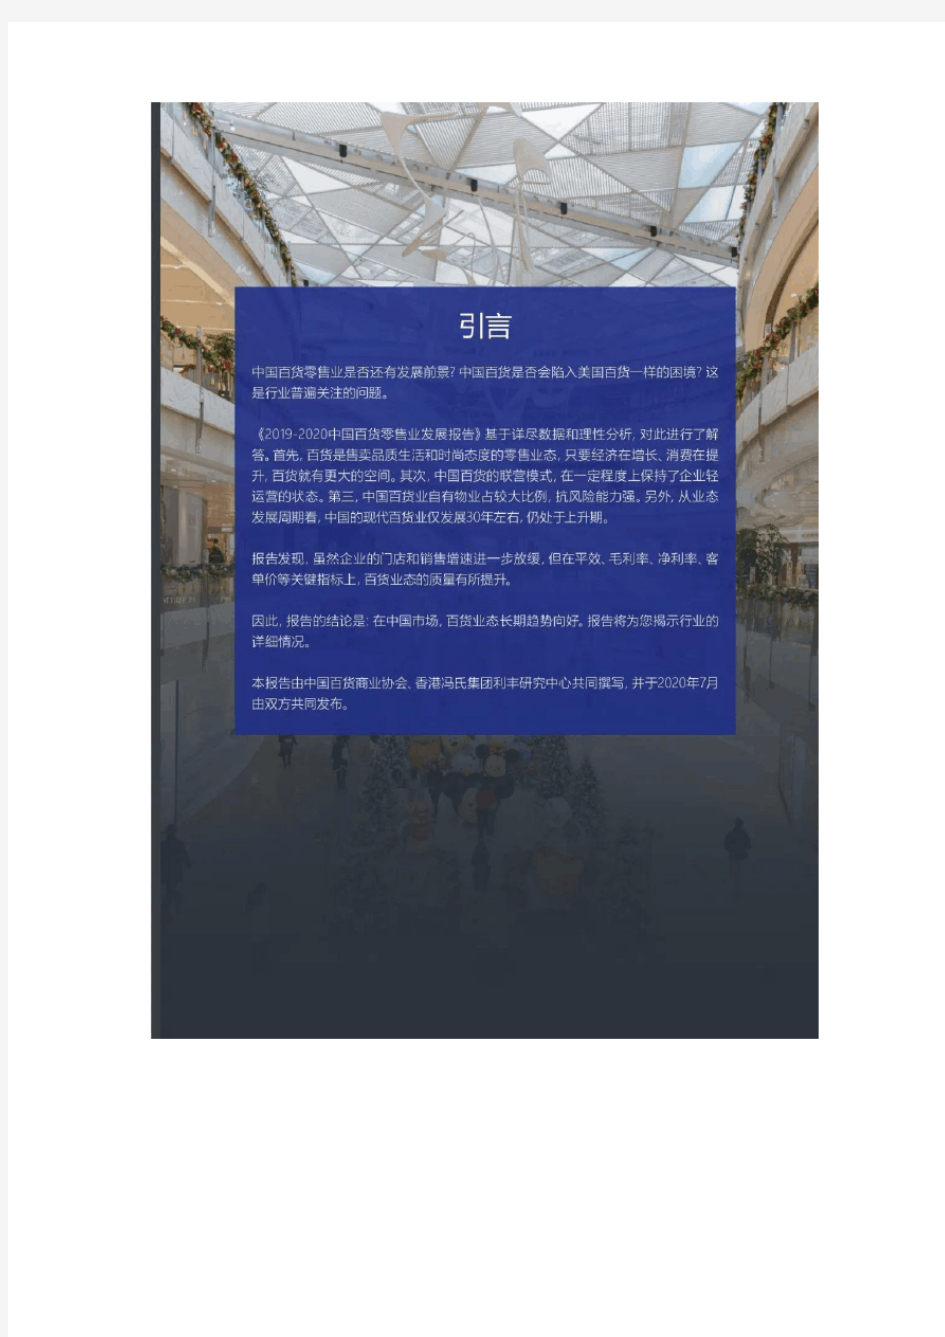 2019-2020中国百货零售业发展报告